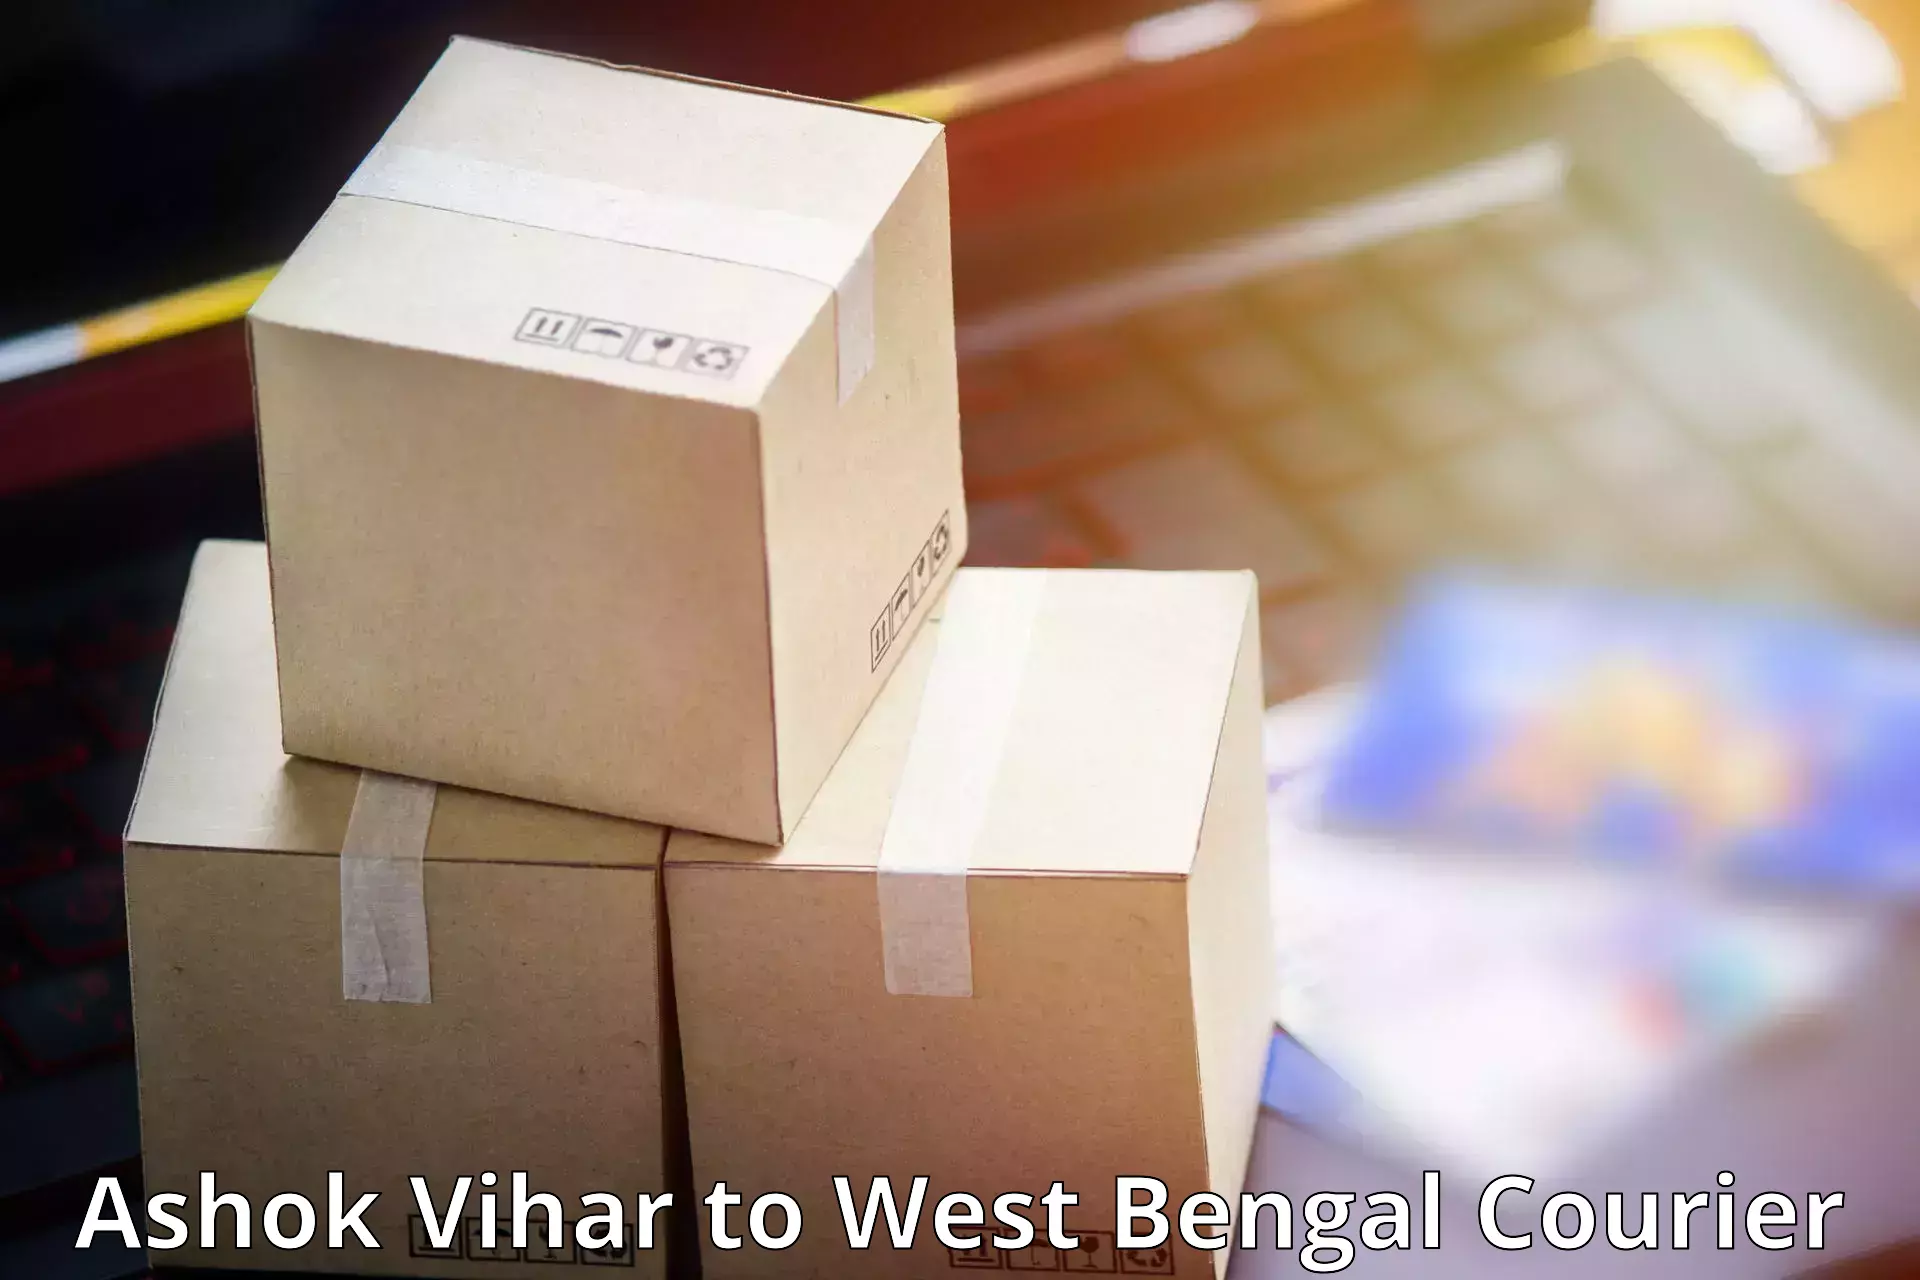 Subscription-based courier Ashok Vihar to Jhargram